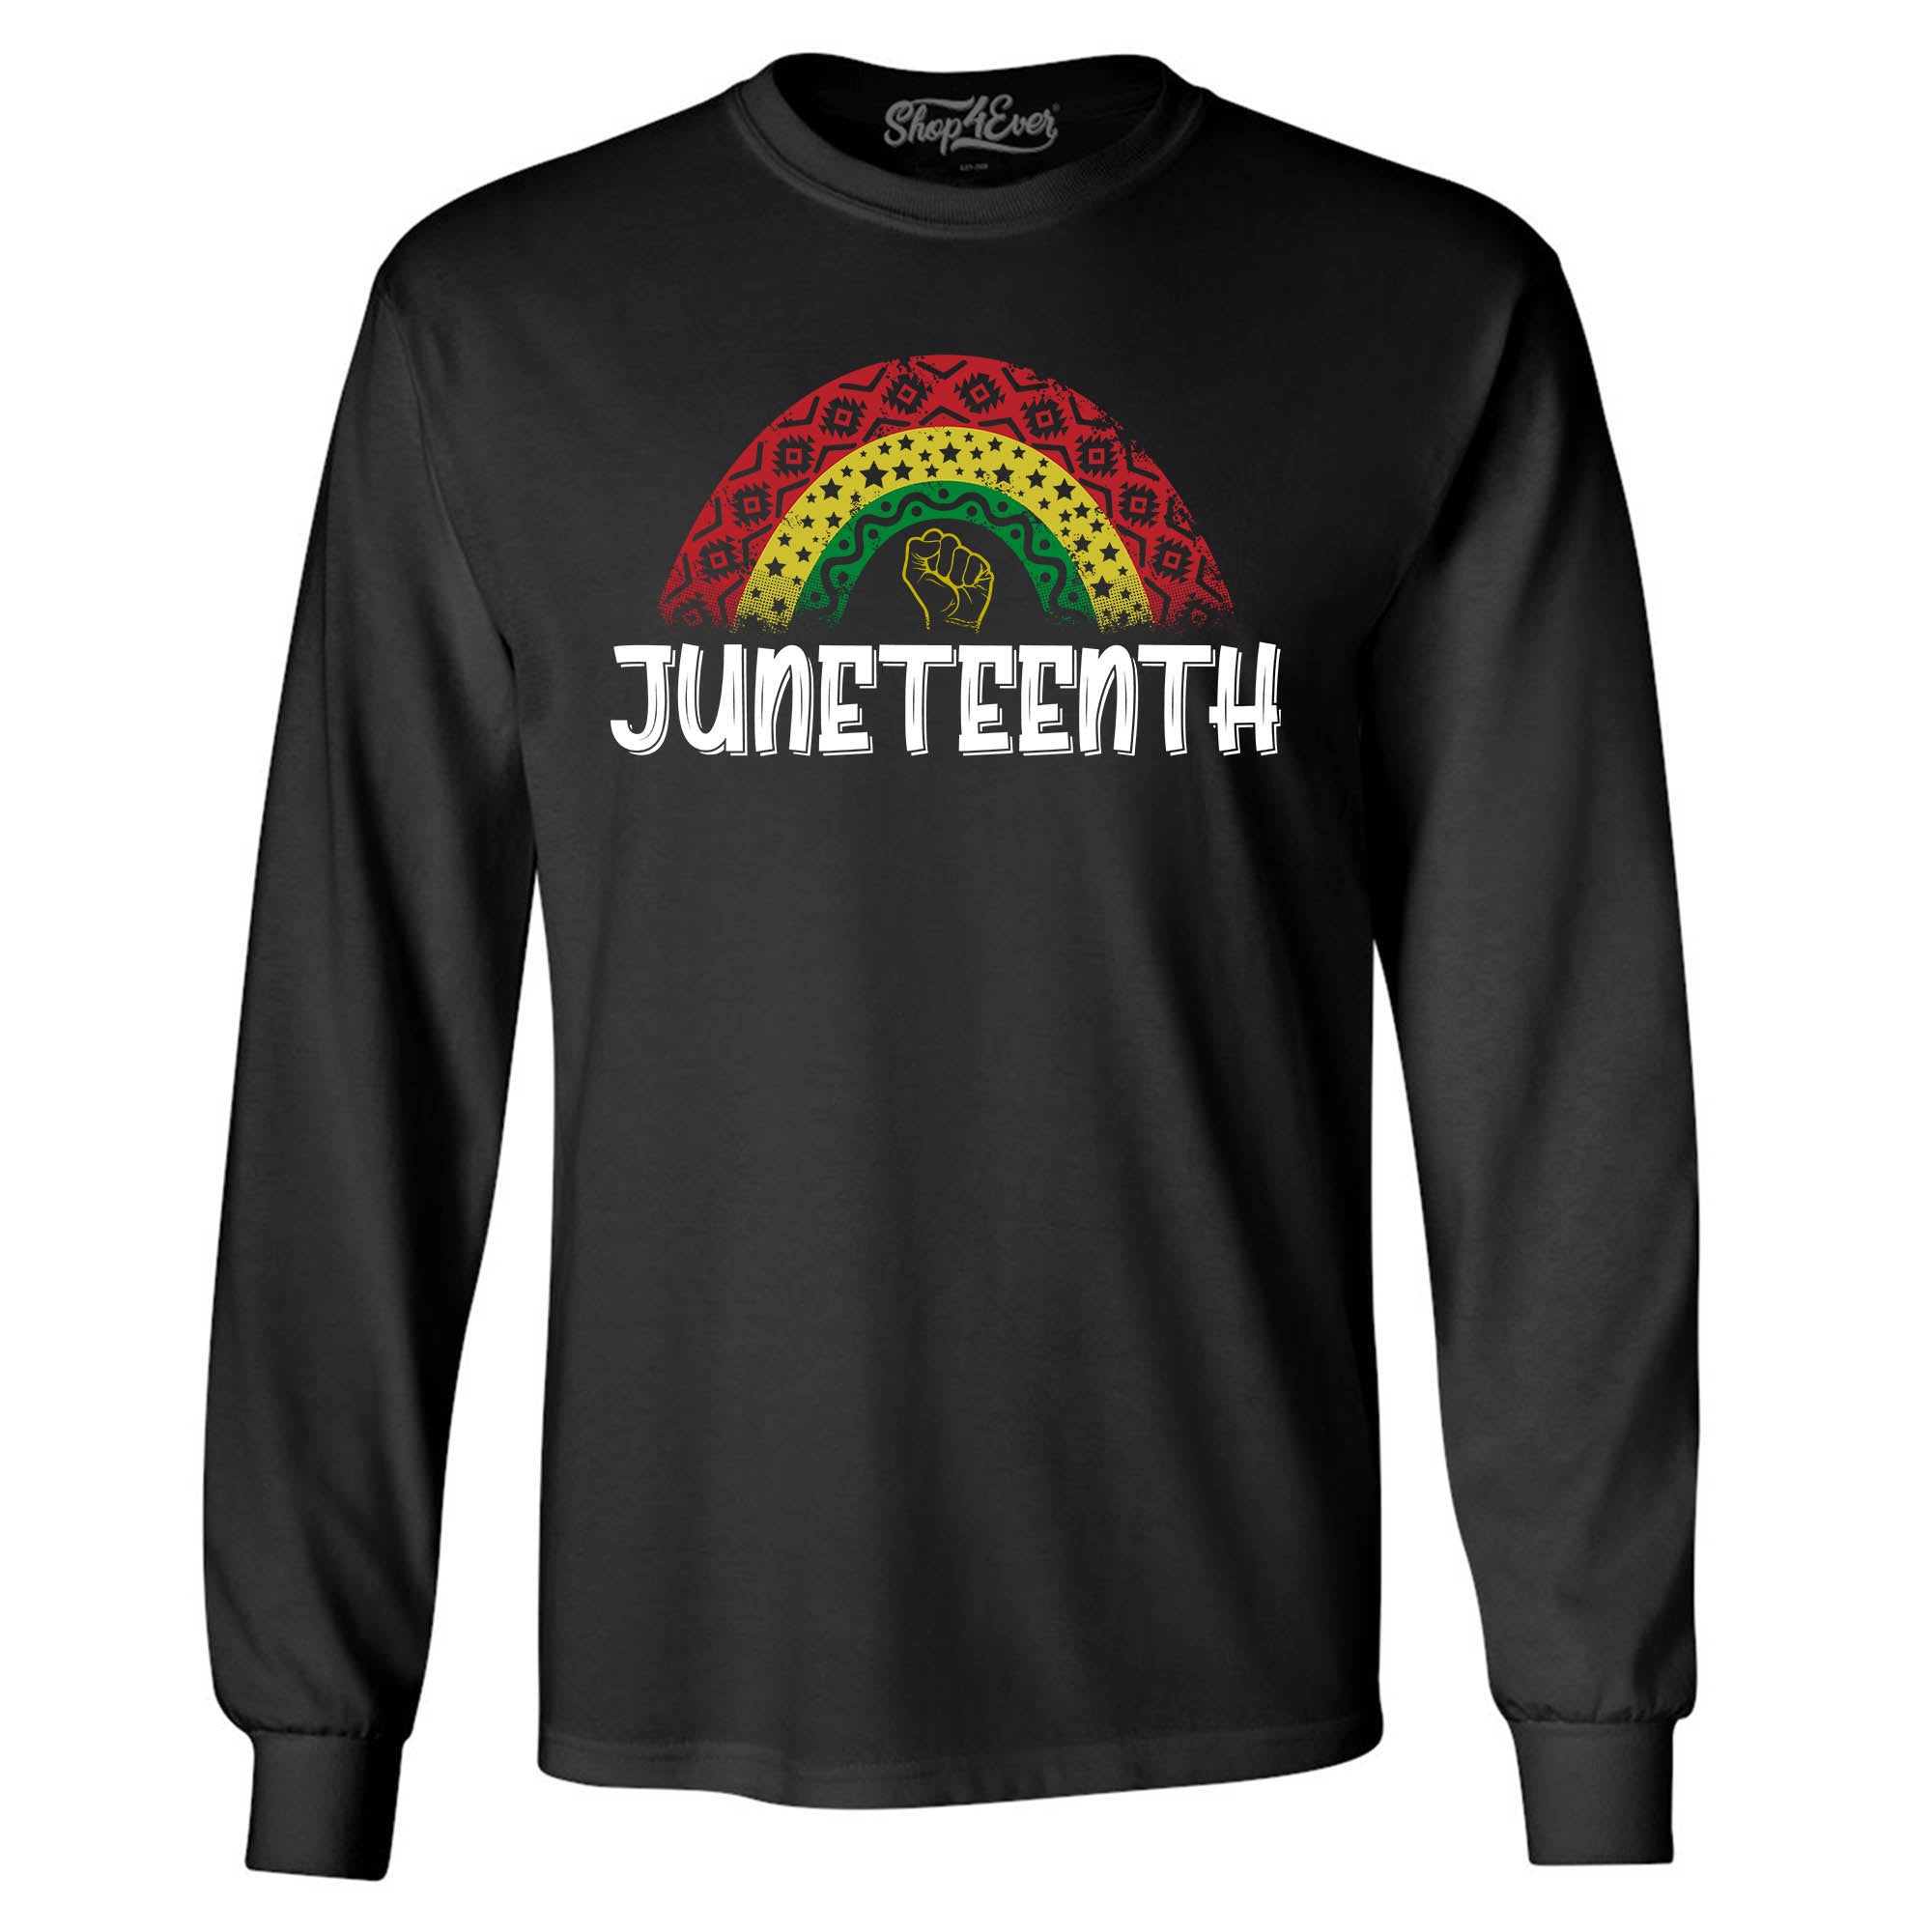 Juneteenth Rainbow June 19th 1865 Long Sleeve Shirt